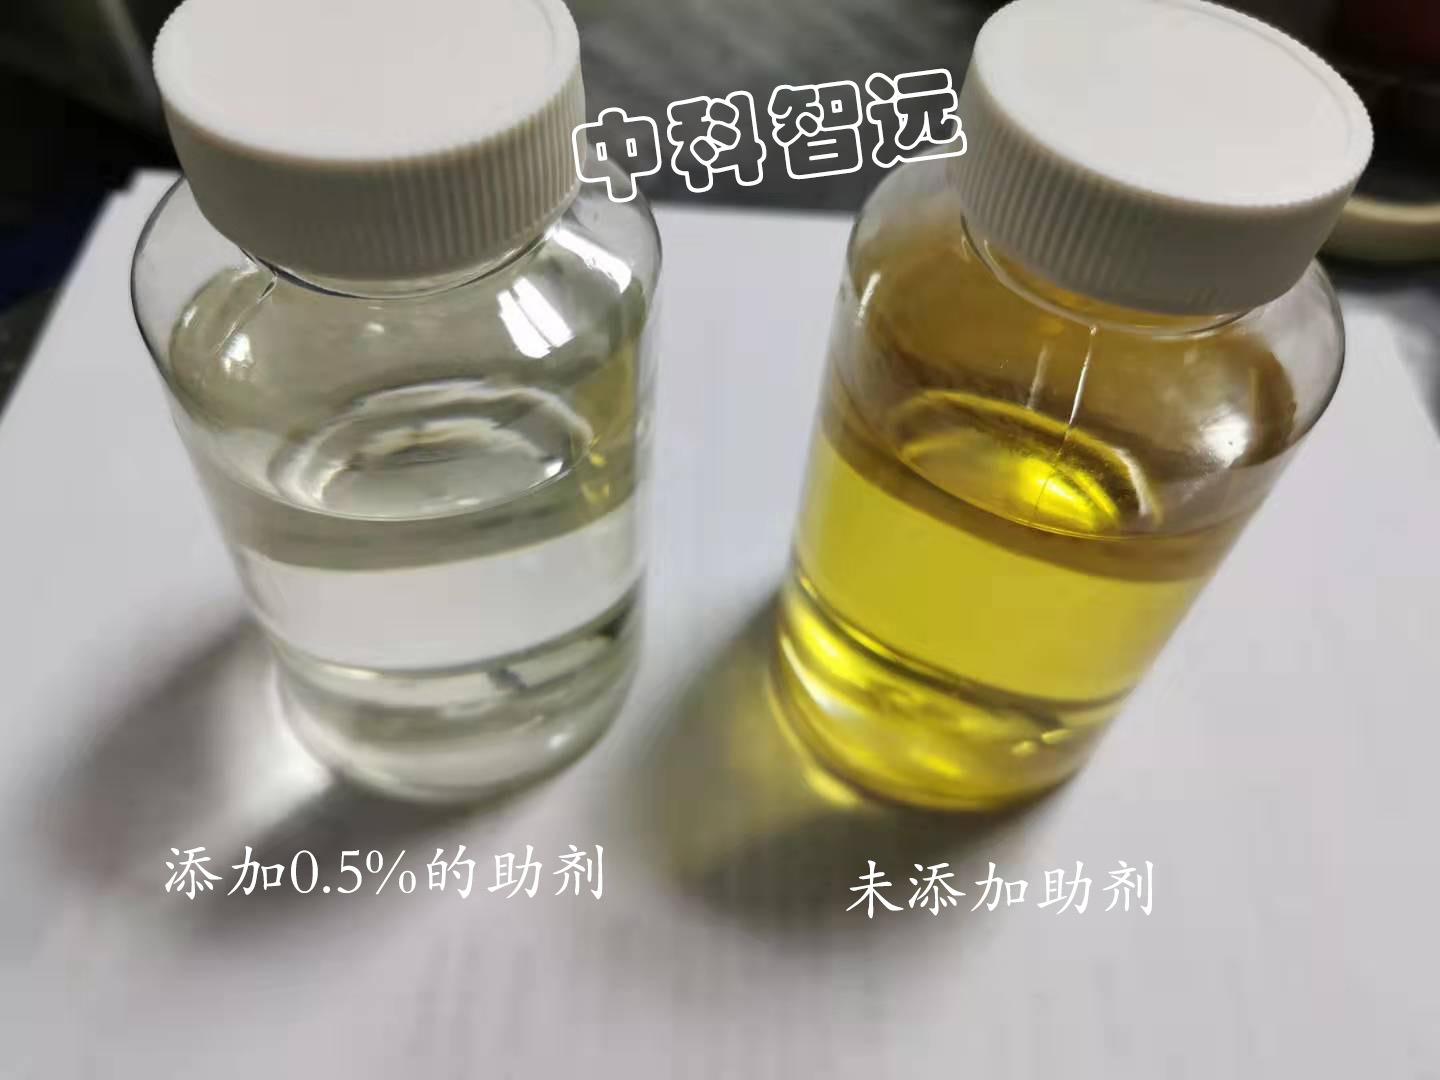 中科智远厂家直销环氧抗氧化剂ZK-3196